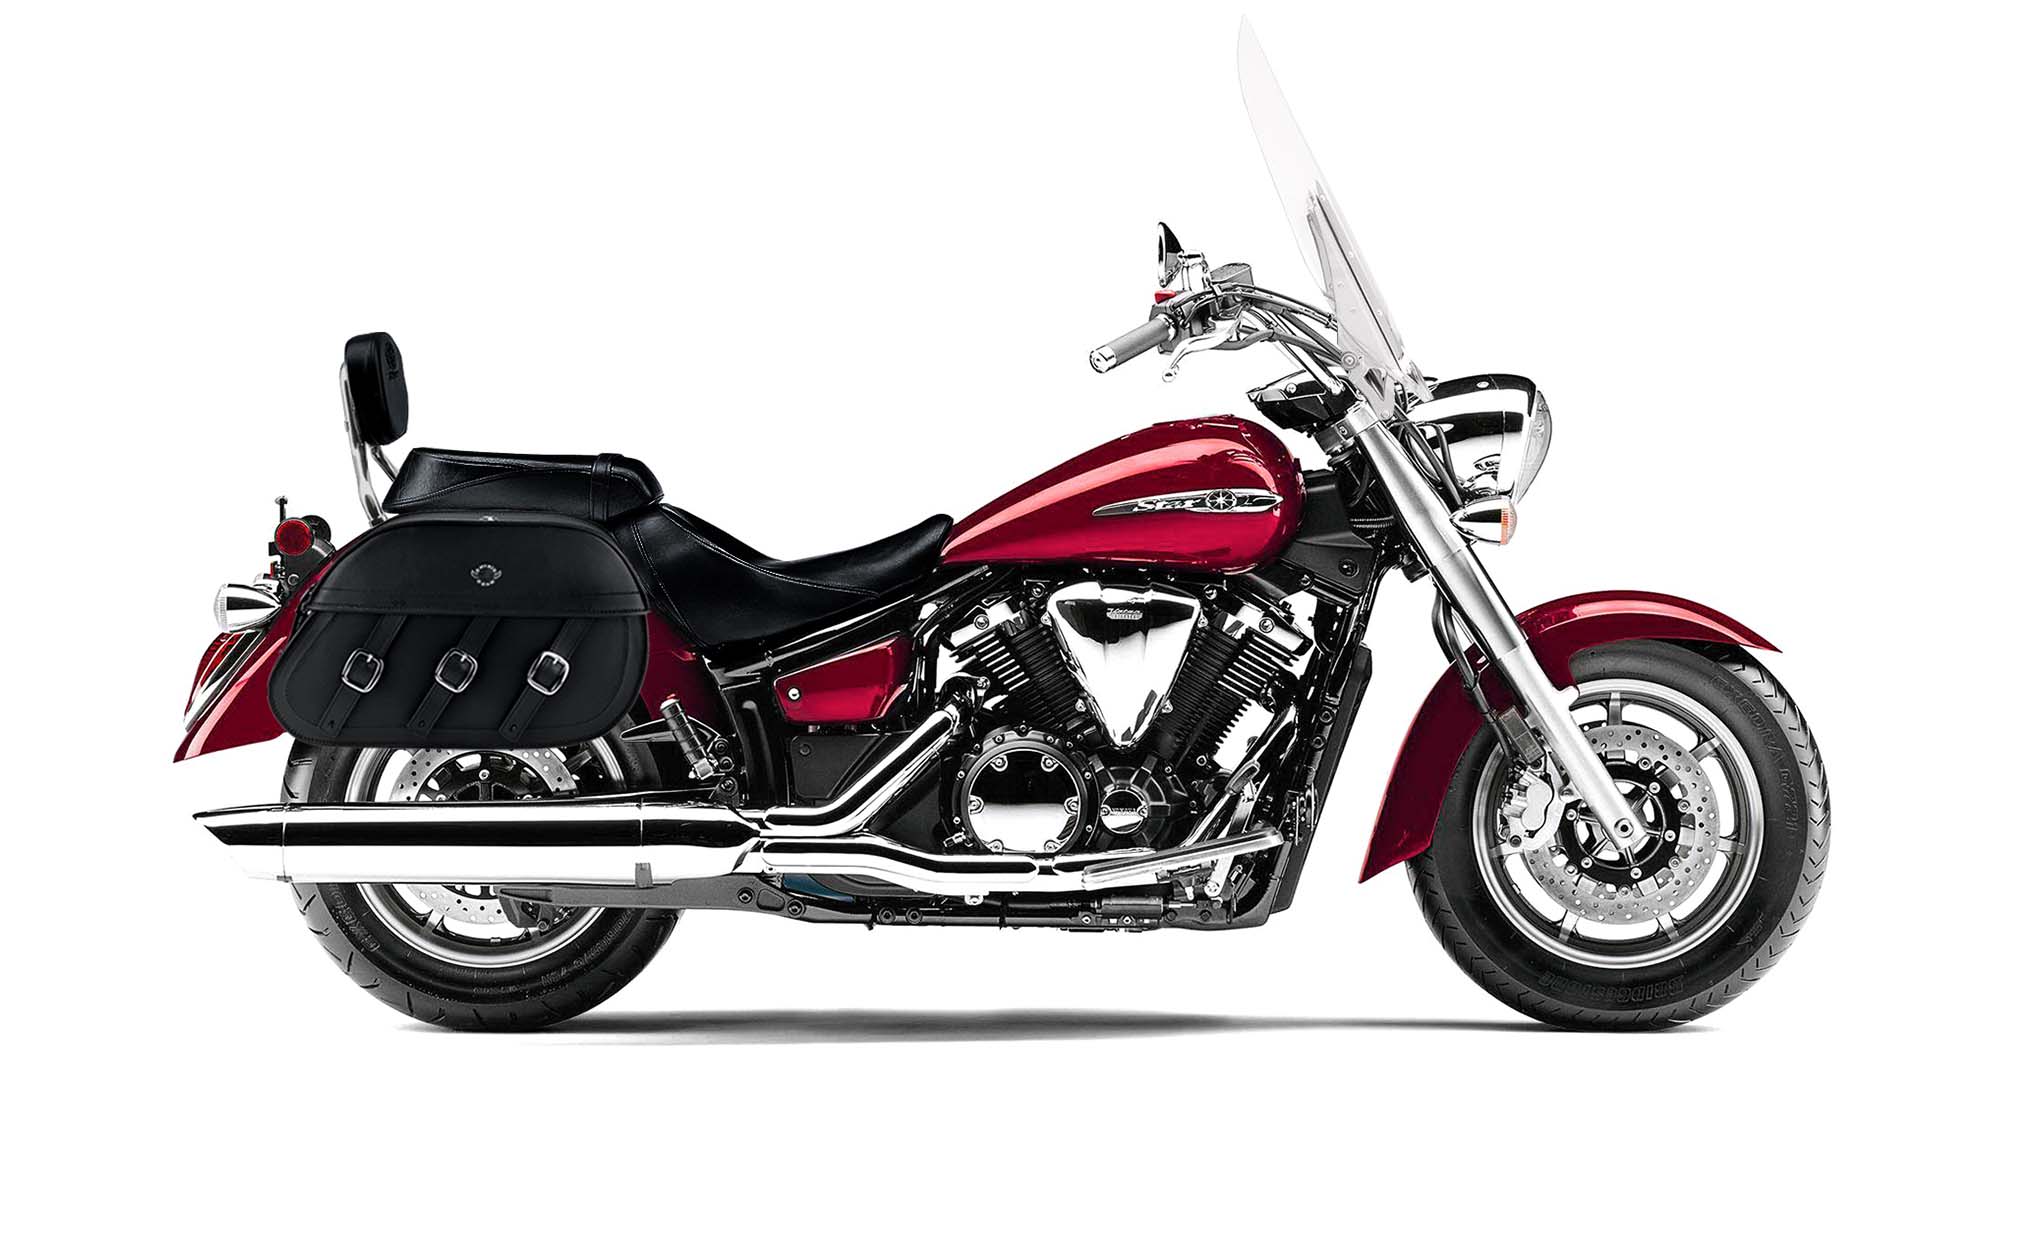 Viking Trianon Extra Large Yamaha V Star 1300 Tourer Leather Motorcycle Saddlebags on Bike Photo @expand